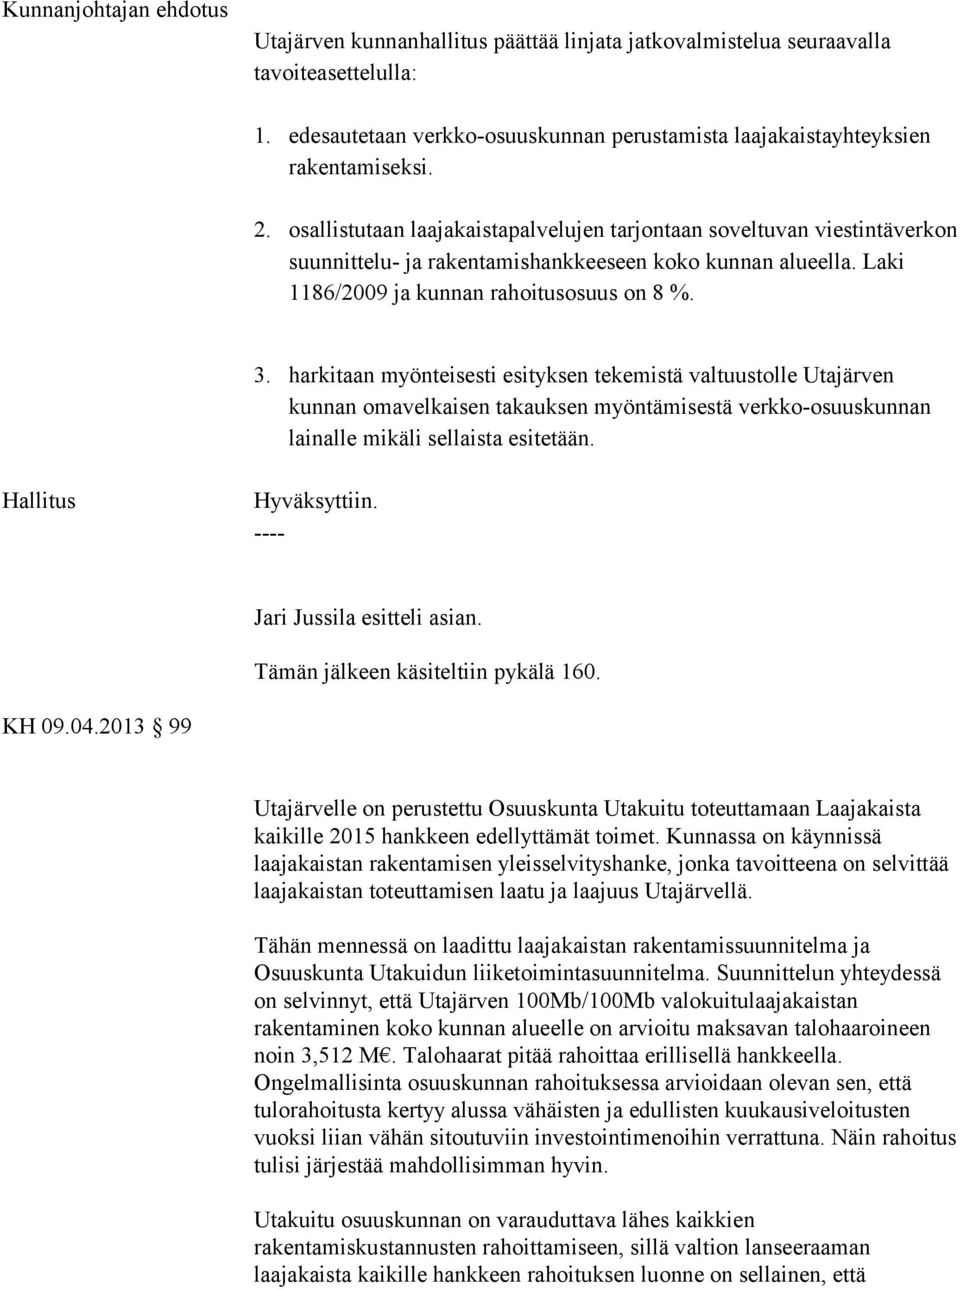 harkitaan myönteisesti esityksen tekemistä valtuustolle Utajärven kunnan omavelkaisen takauksen myöntämisestä verkko-osuuskunnan lainalle mikäli sellaista esitetään. Jari Jussila esitteli asian.